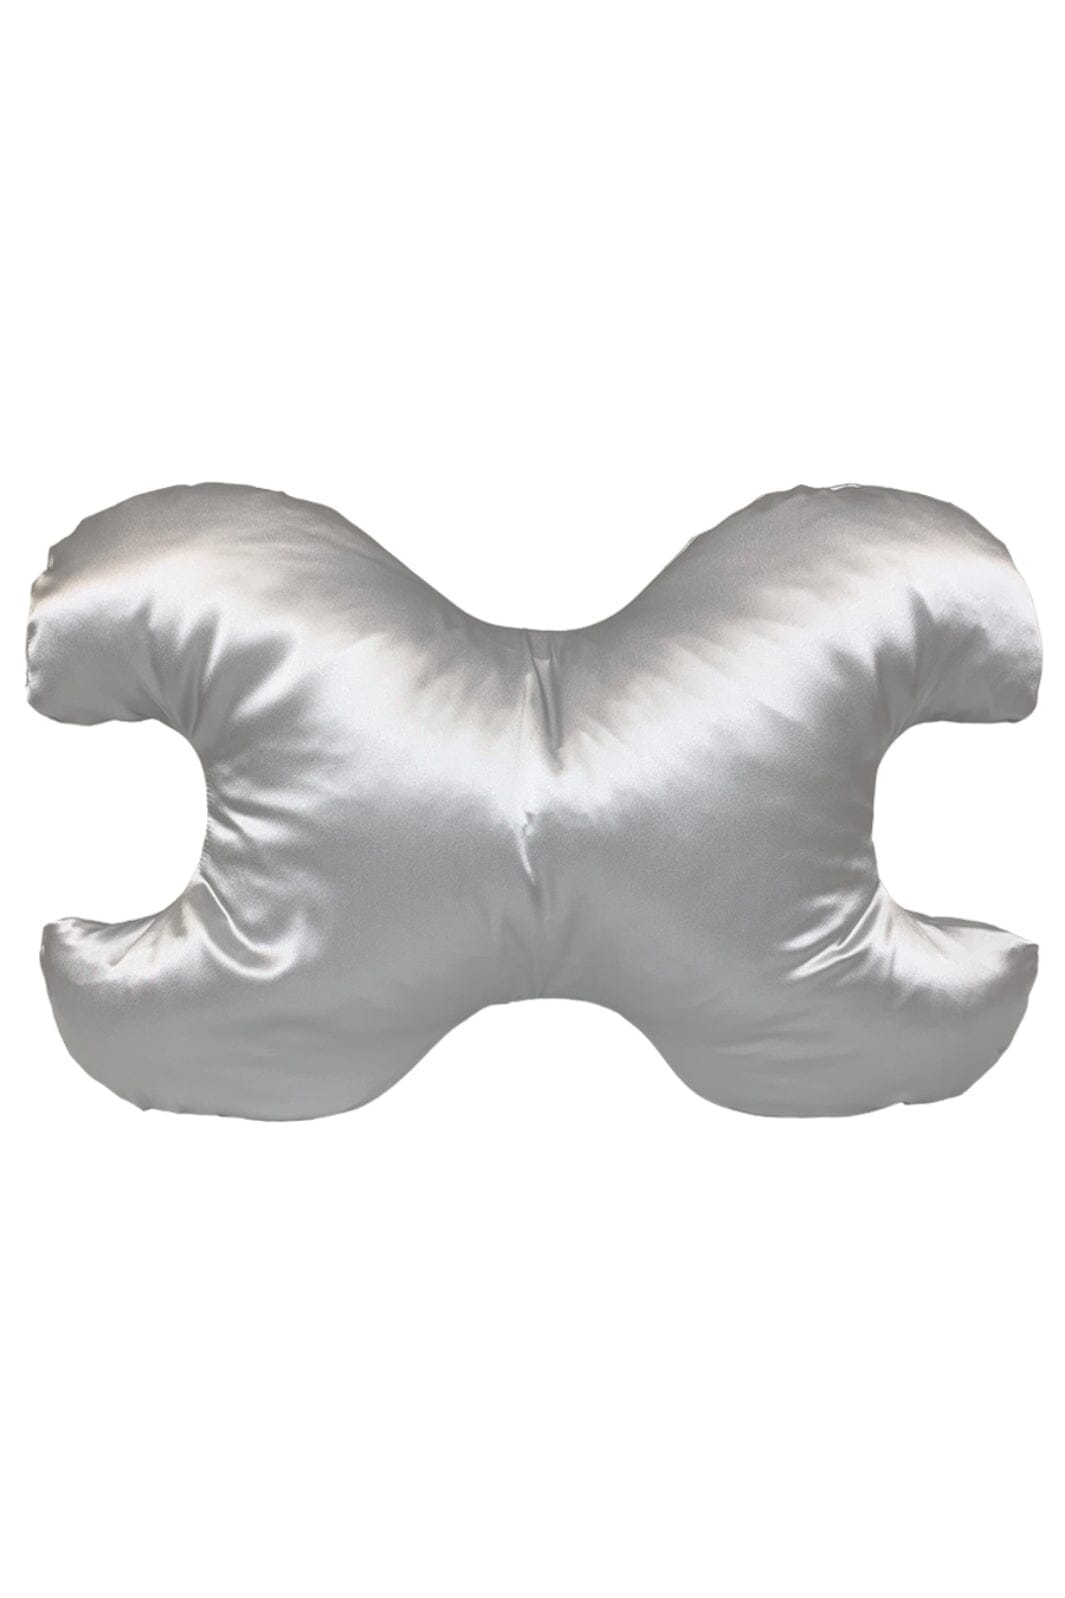 Save My Face - Le Grand - stor pude med 100% silkebetræk Silver Puder 